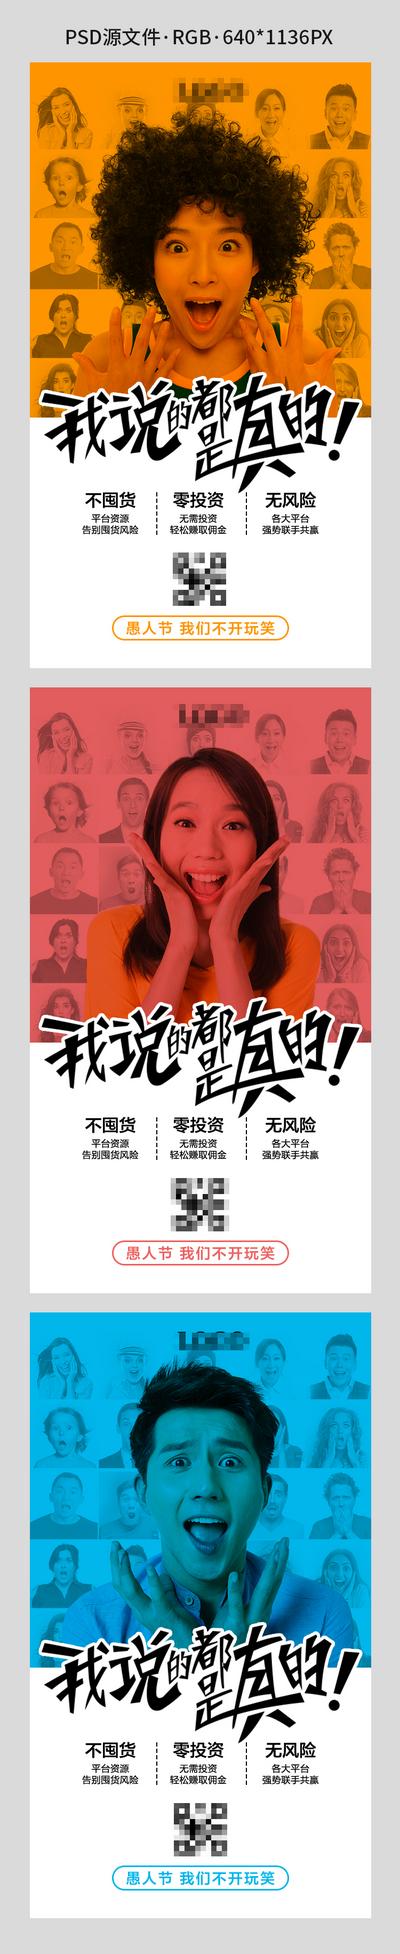 【南门网】海报 产品 招商 人物 创意 公历节日 愚人节 系列